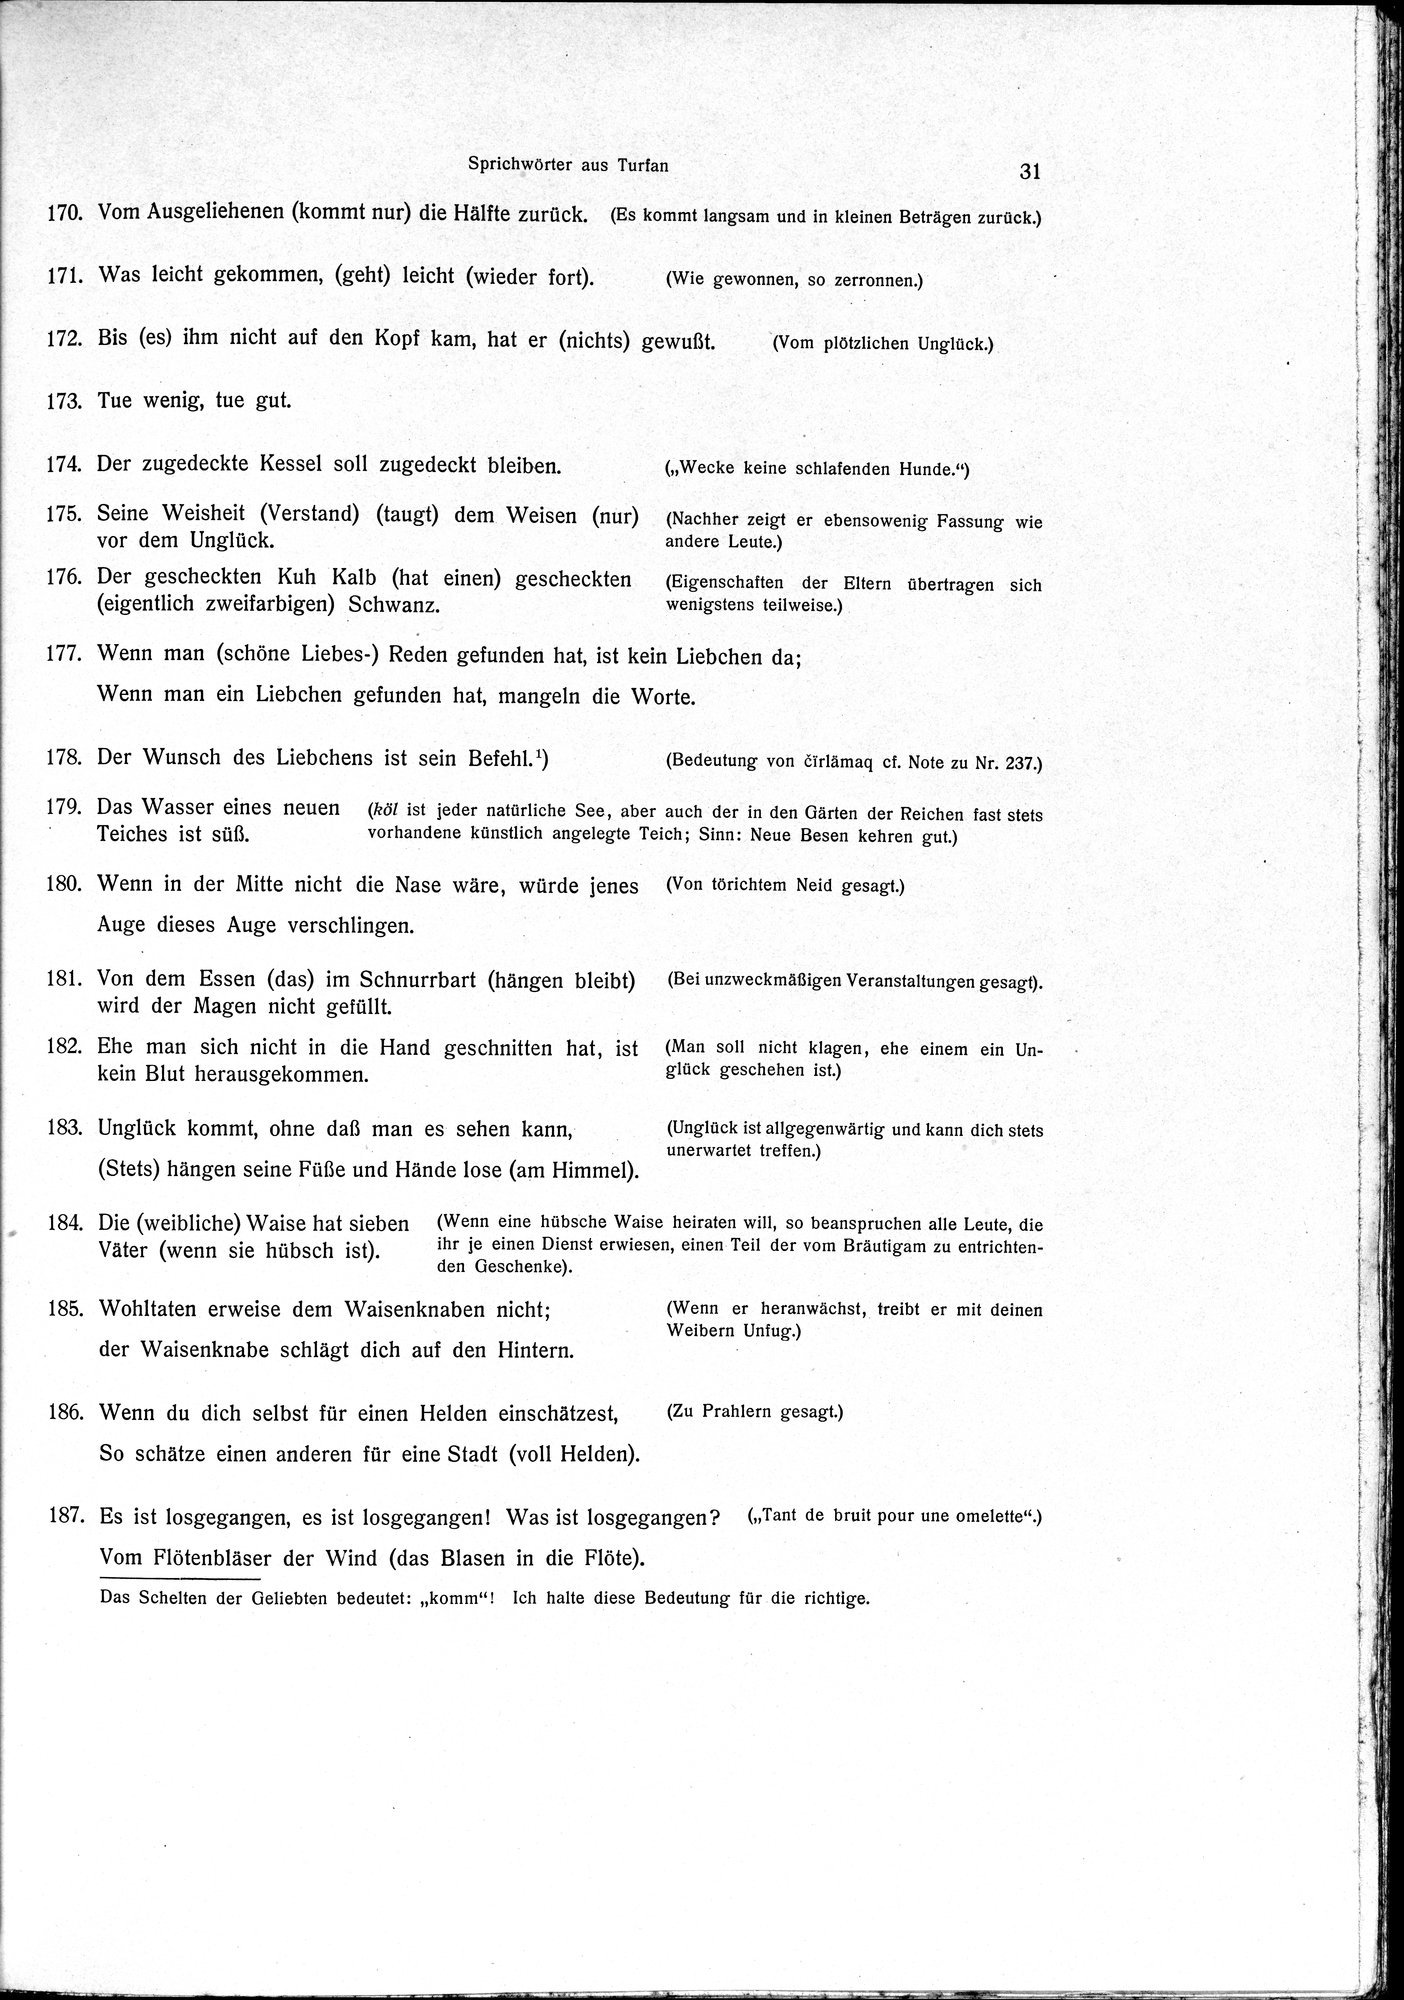 Sprichwörter und Lieder aus der Gegend von Turfan : vol.1 / Page 43 (Grayscale High Resolution Image)